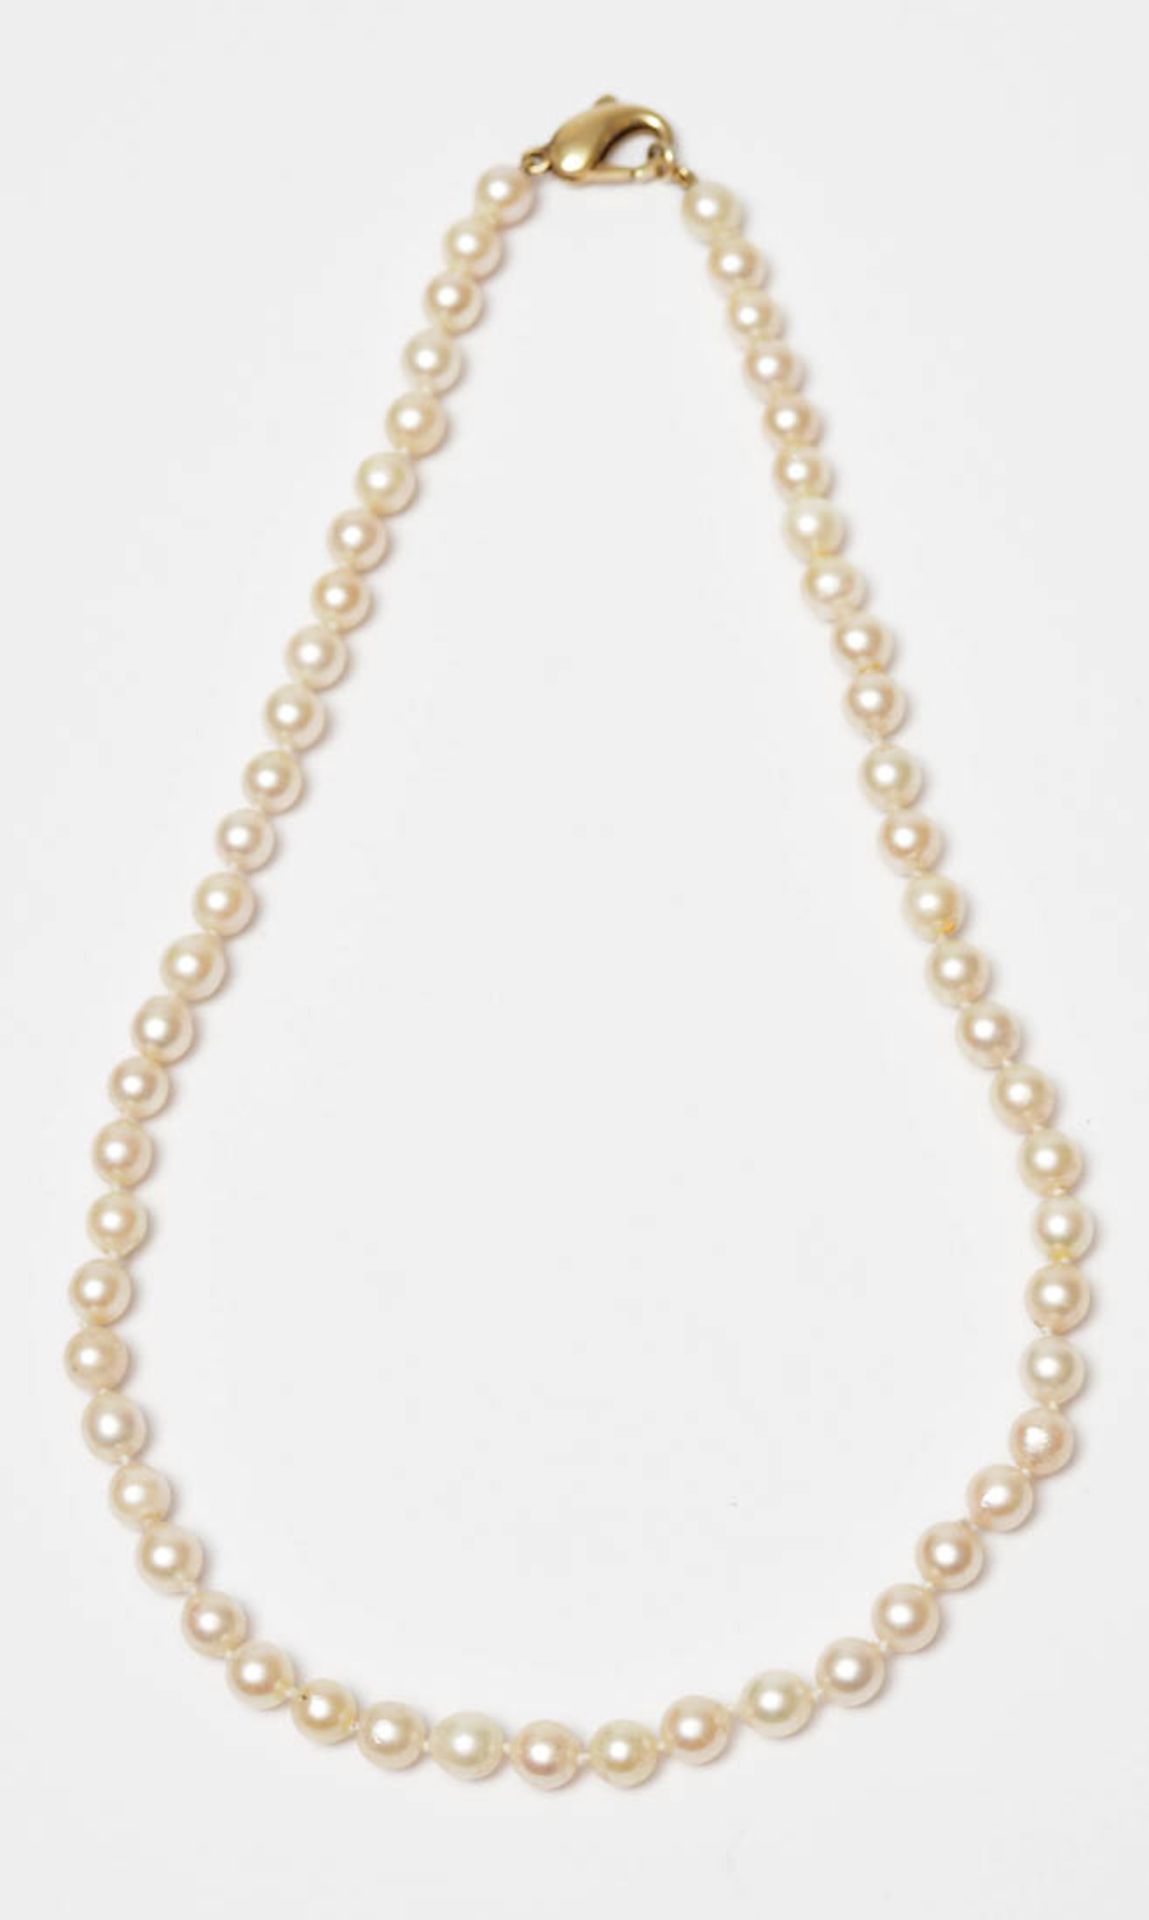 Perlenkette Gleichmäßige Perlen von je ca. 5-6mm Durchm. Karabinerschloss aus GG 14kt. L. ca. 42cm.